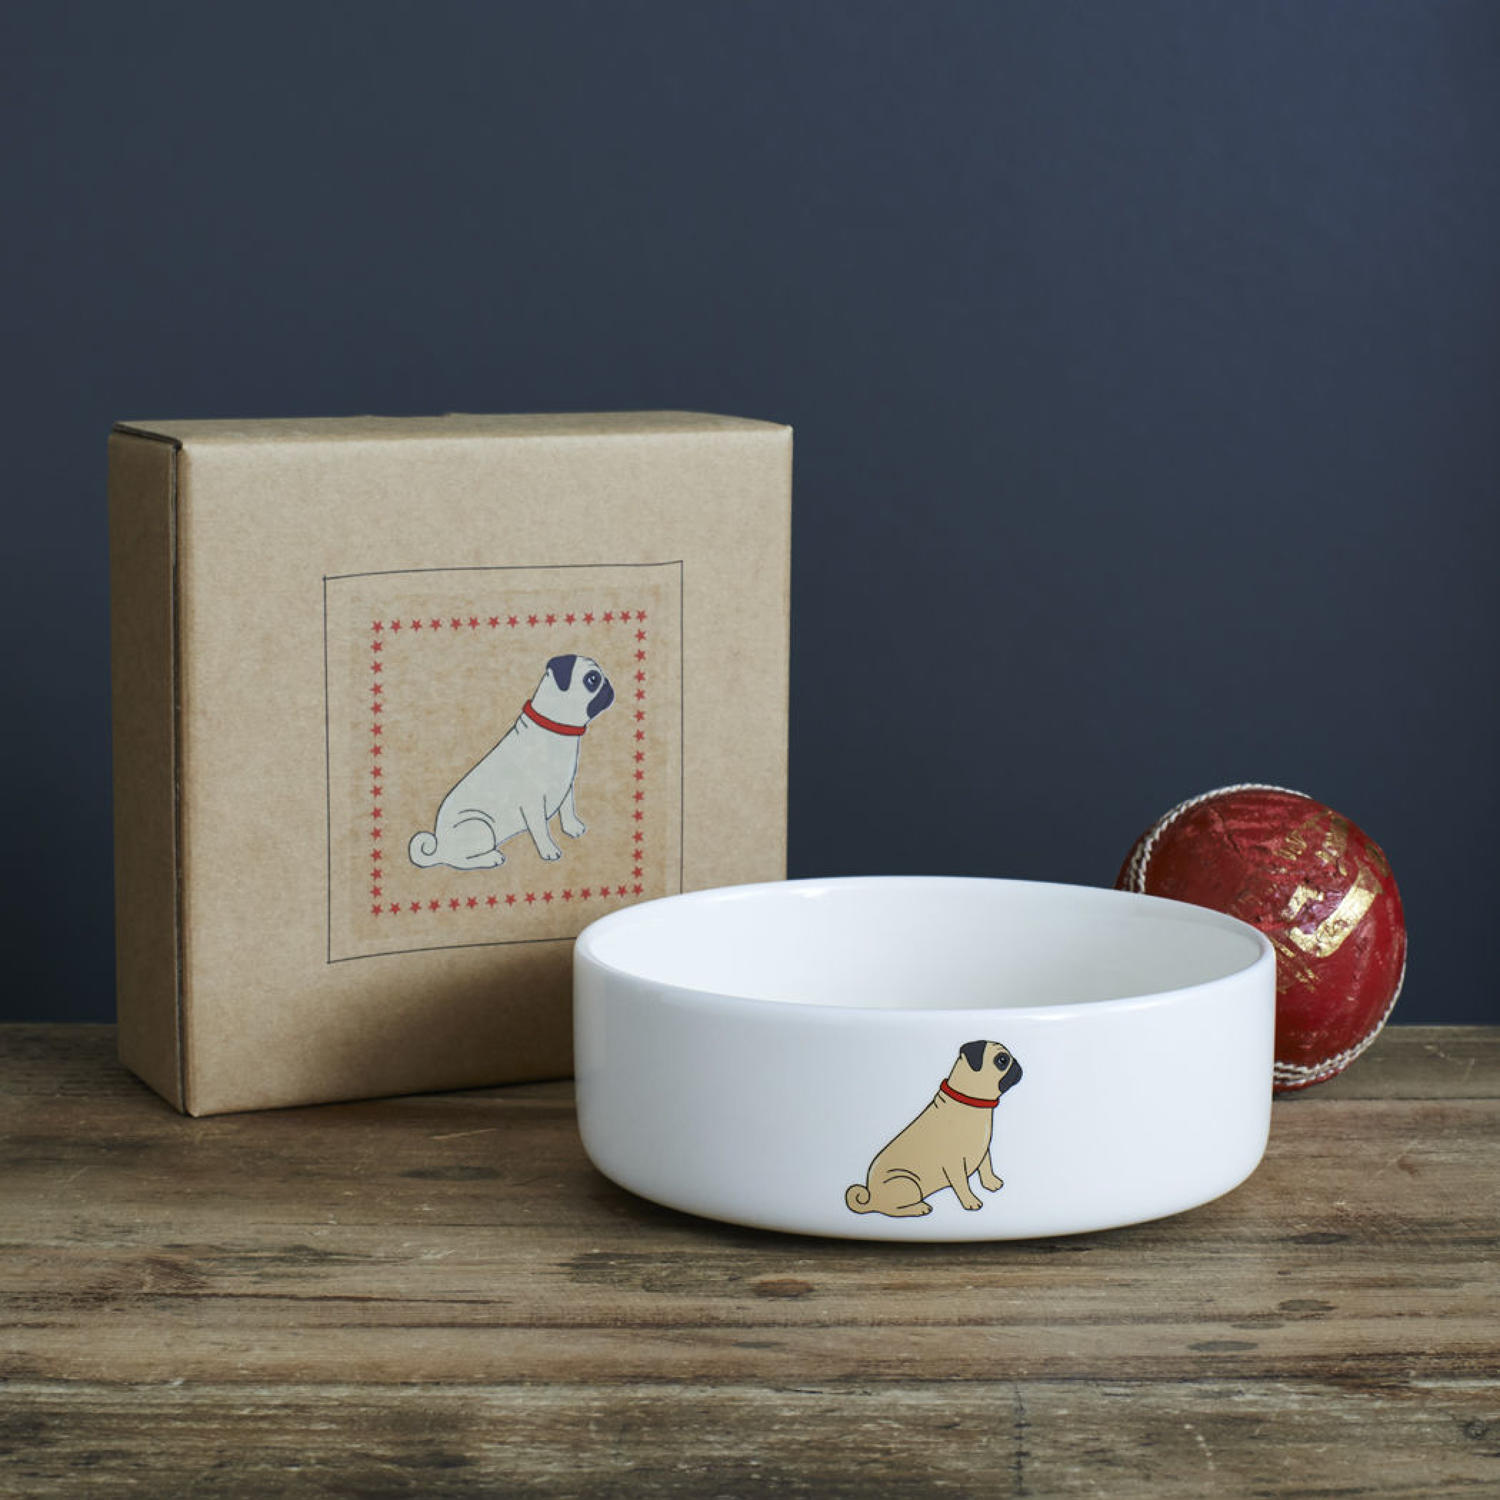 Ceramic dog bowl in gift box - Pug